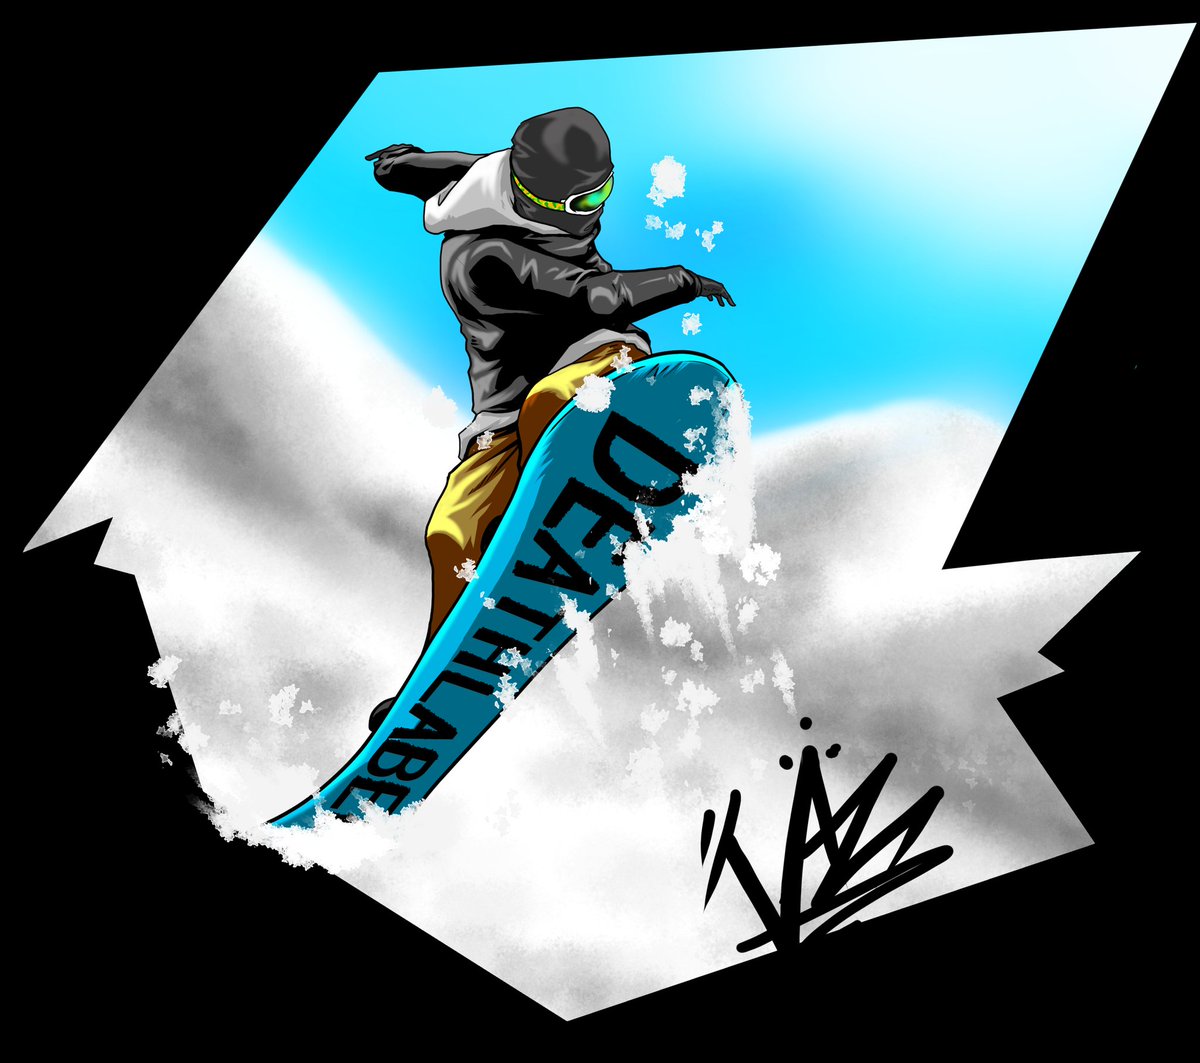 青木 伴イラストレーター Youtube始めました スノーボードイラスト 板ギャン上げ 技名不明 スノボの季節が来ますねー 今年こそは綺麗にノーリー360を回せるように頑張りたいと思います スノボ スノーボード イラスト Snowboarding